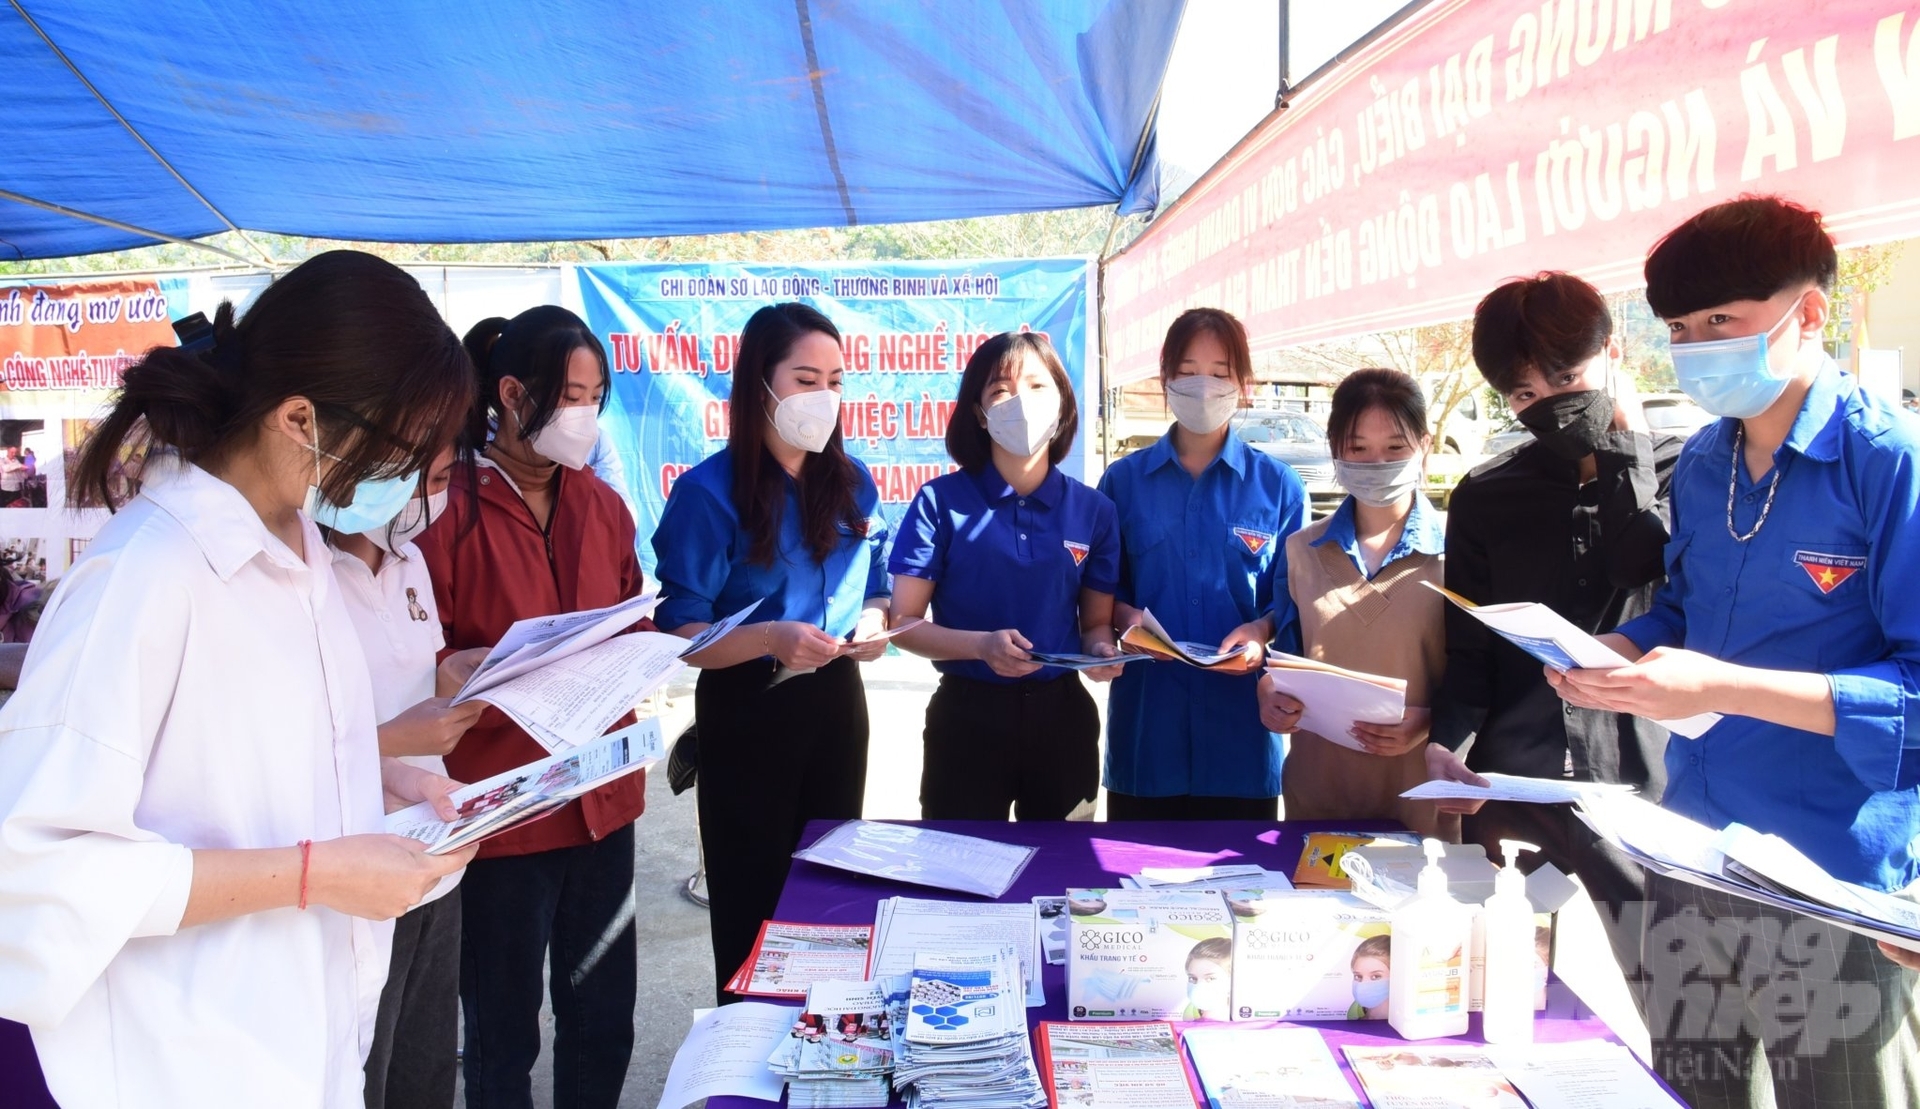 Tư vấn hỗ trợ việc làm, Sở Lao động Thương binh và Xã hội tỉnh Tuyên Quang tăng tần suất tổ chức các phiên giao dịch việc làm. Ảnh: Đào Thanh.